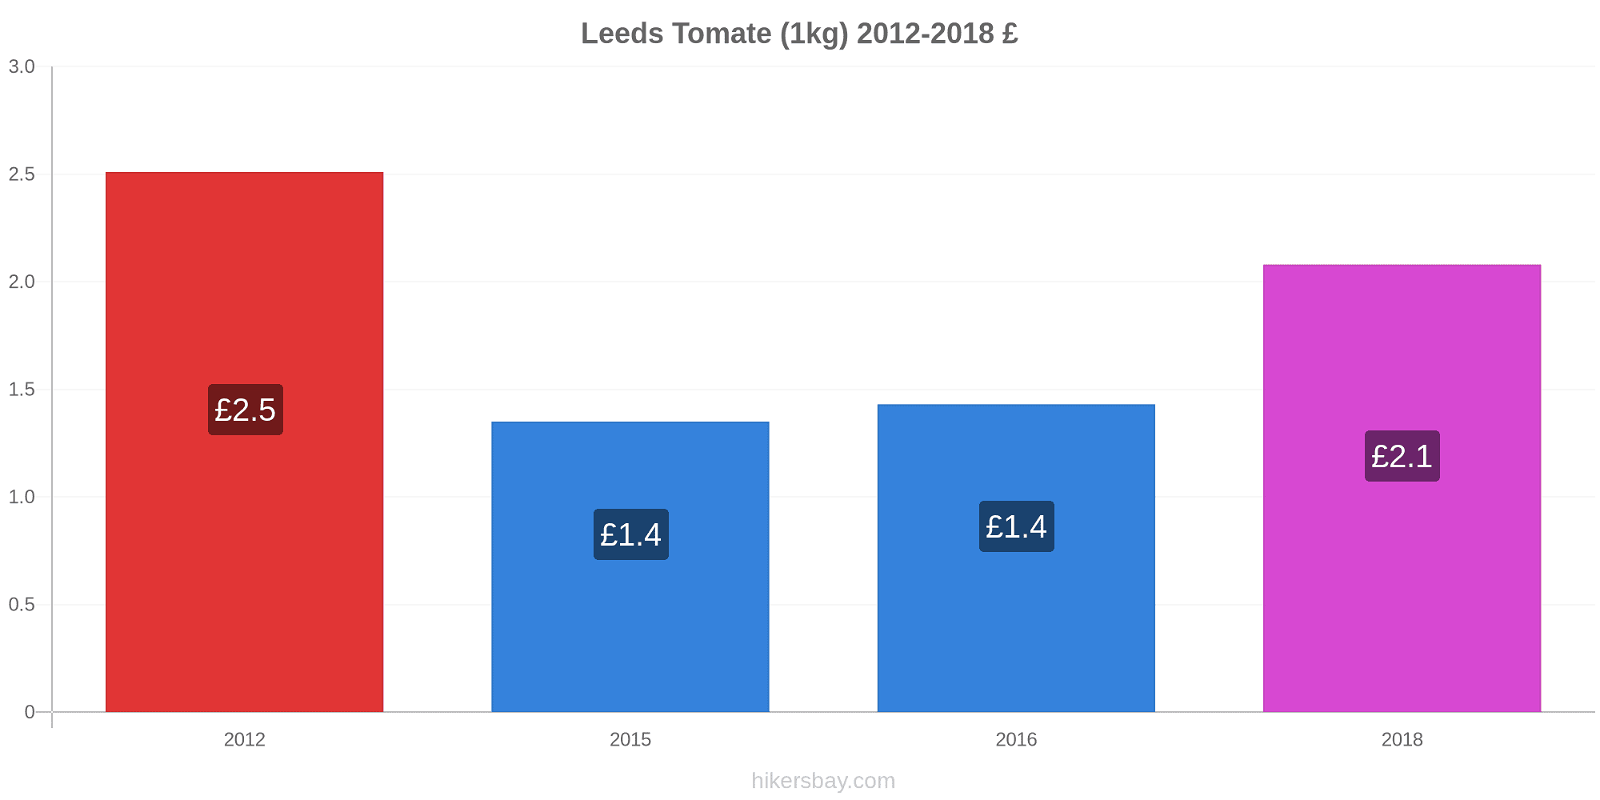 Leeds cambios de precios Tomate (1kg) hikersbay.com